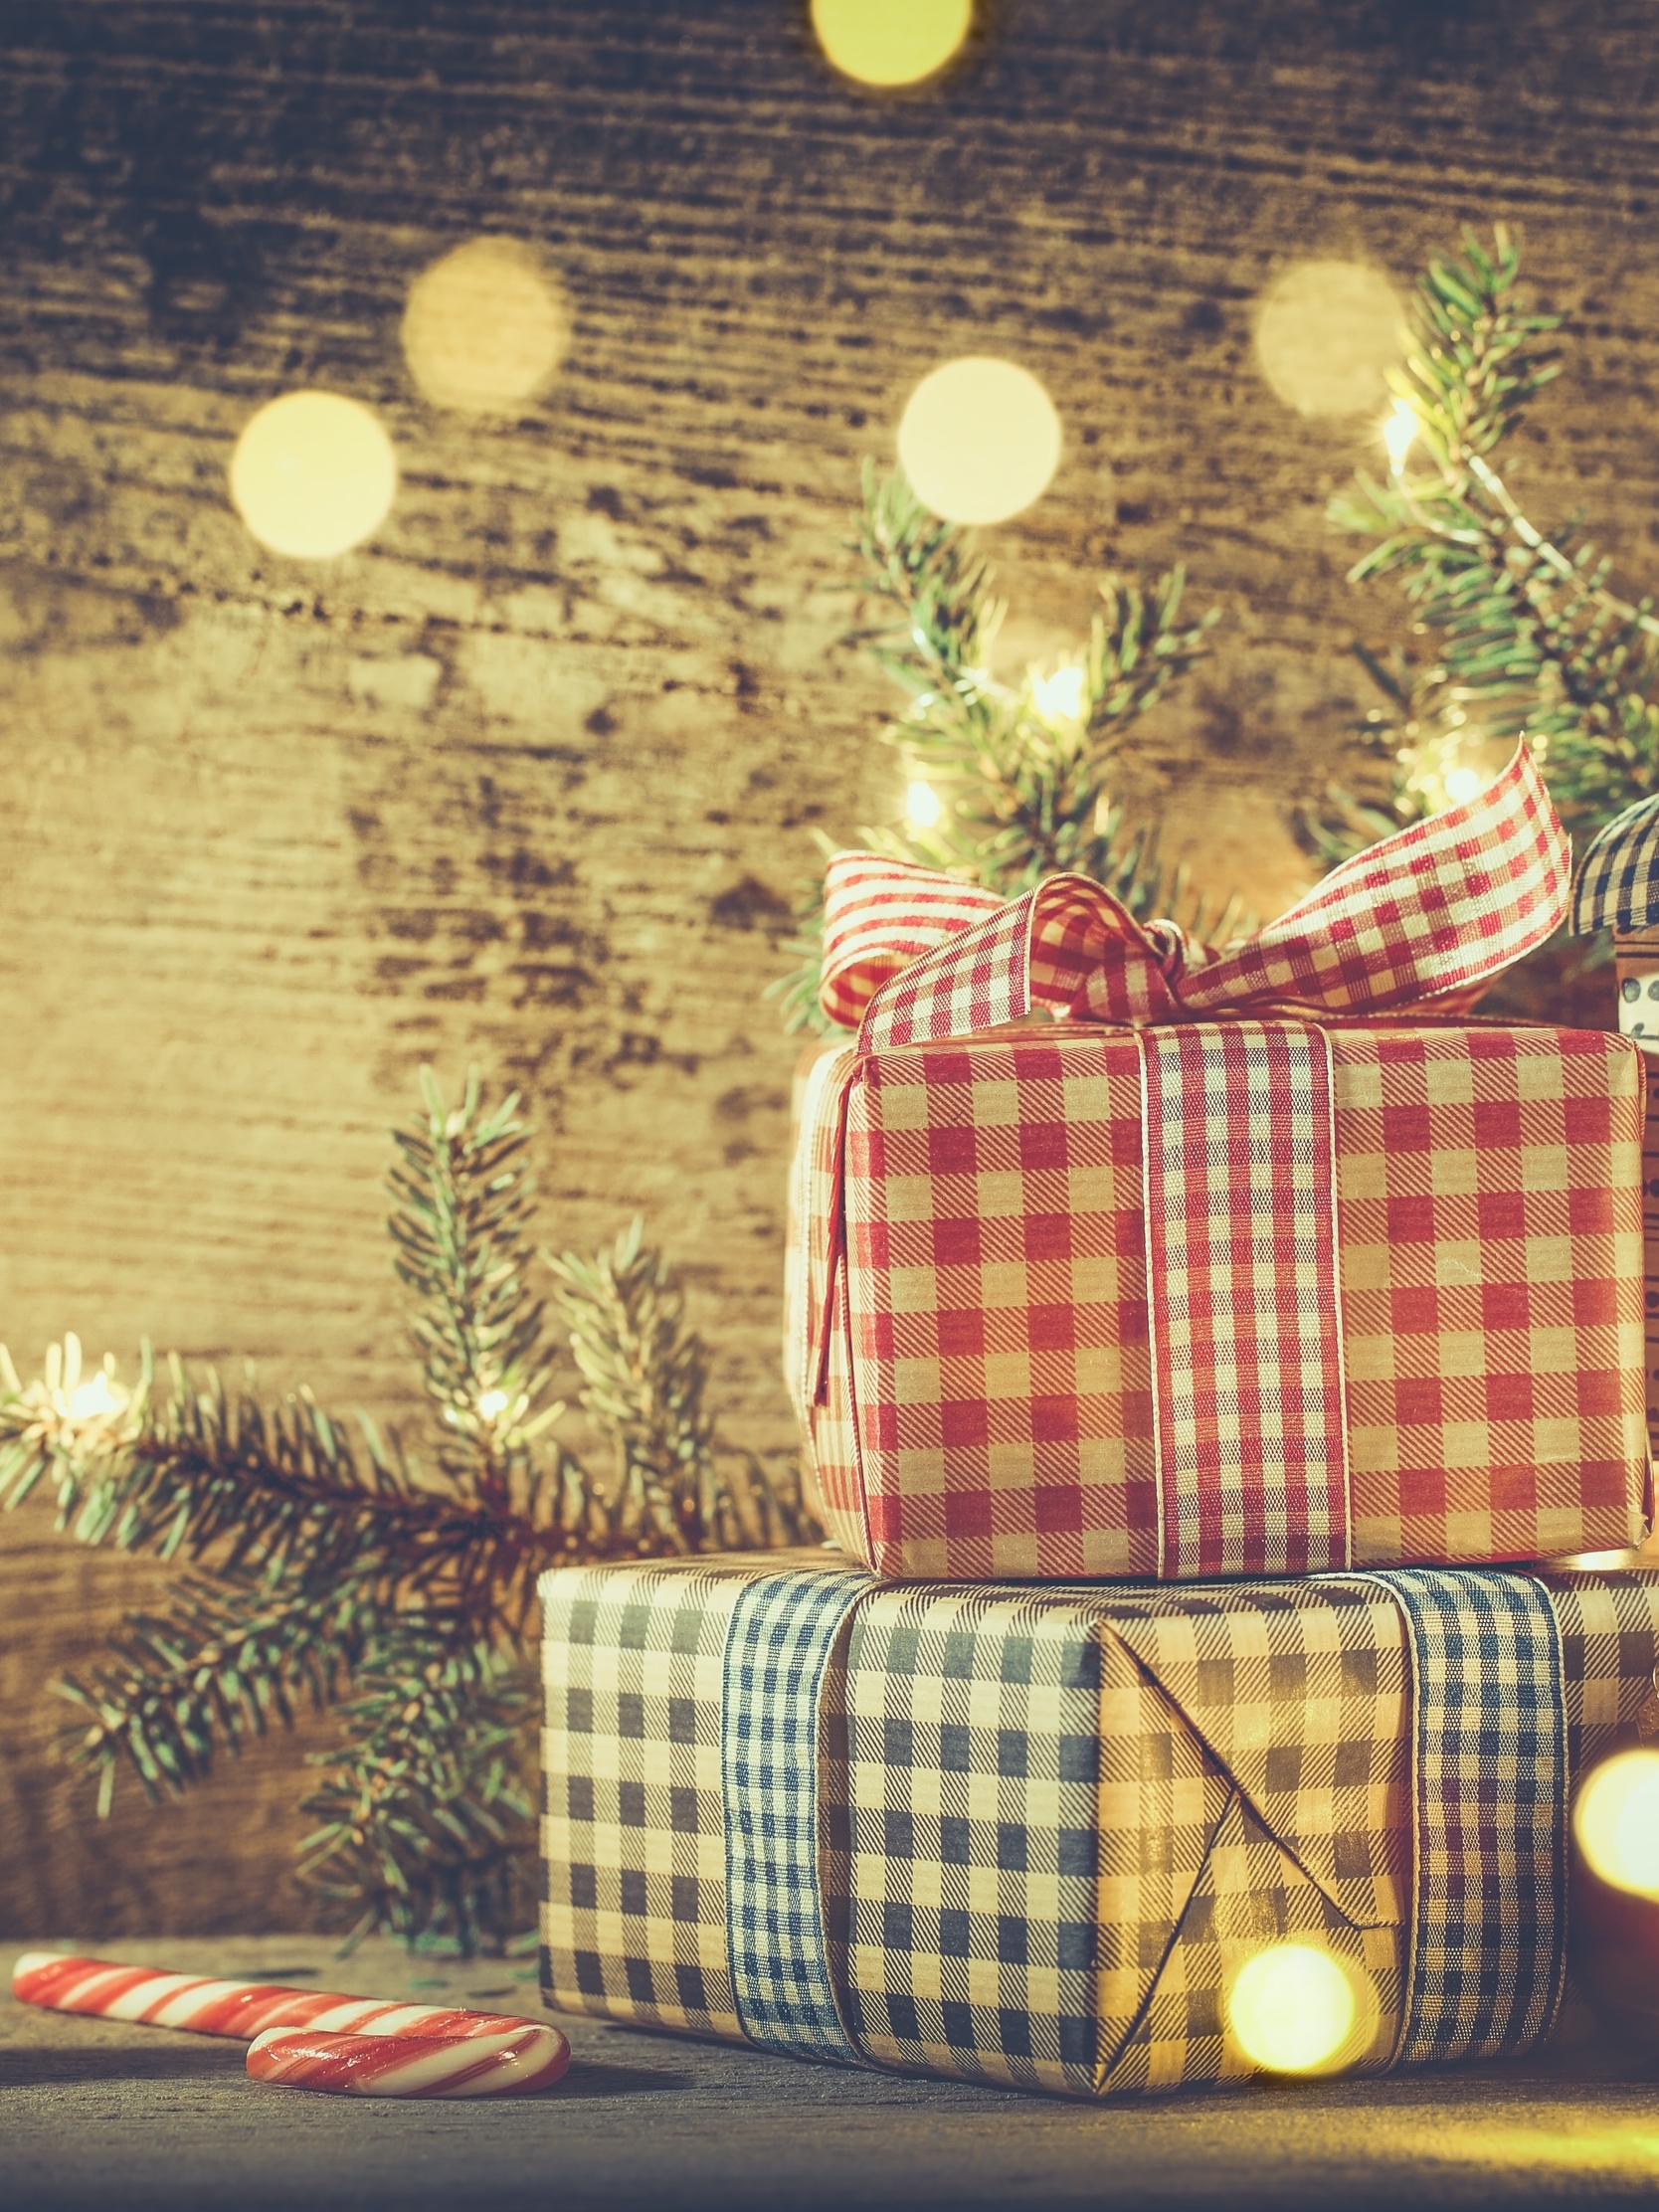 Картинка: Новый год, Рождество, подарки, коробки, блики, ветки, ель, шары